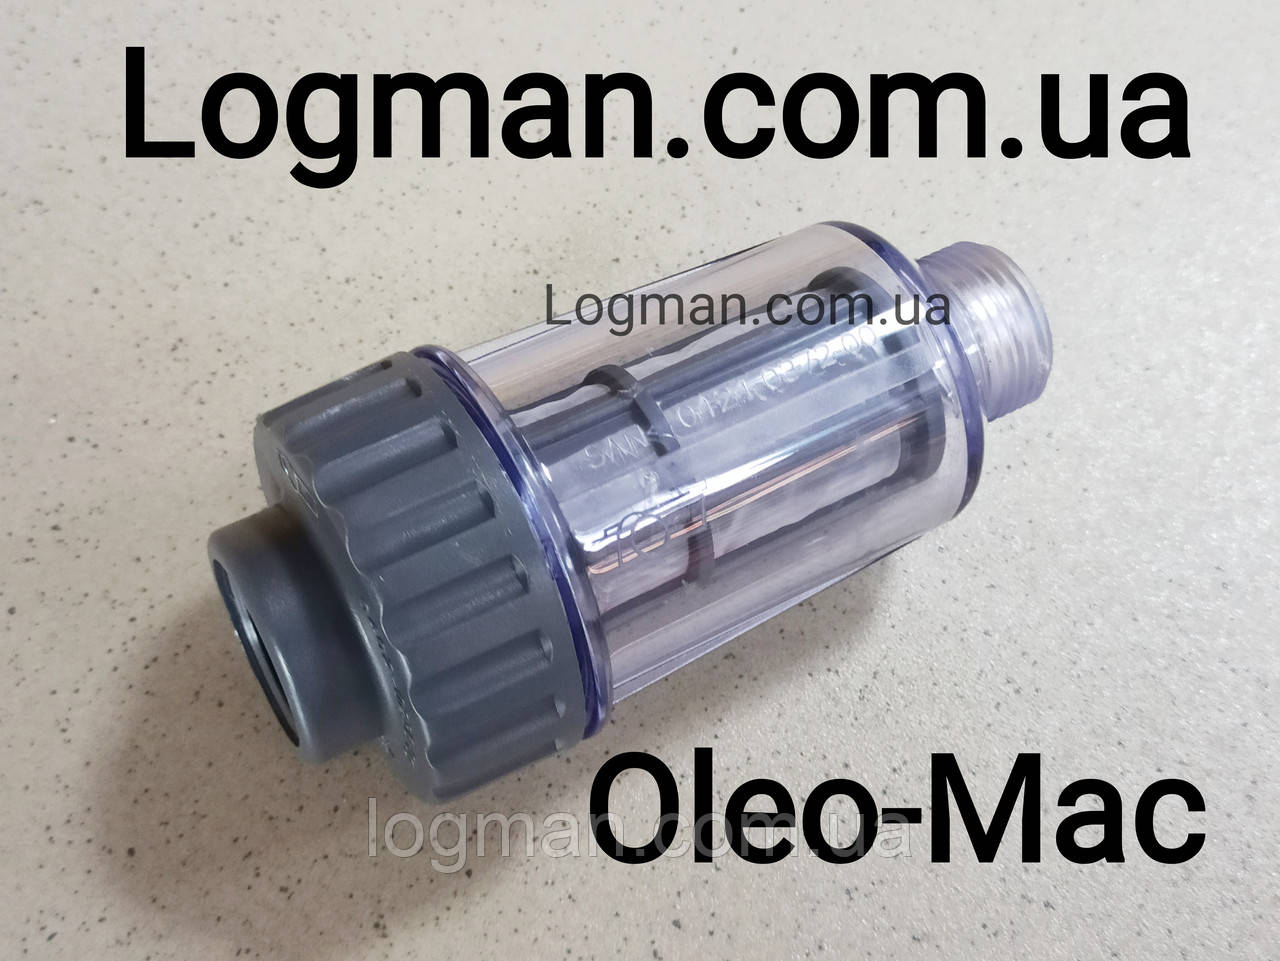 Фільтр для мийки Oleo-Mac/Efco на трійку Олео-Мак/Ефко 1002012900A Оригінал